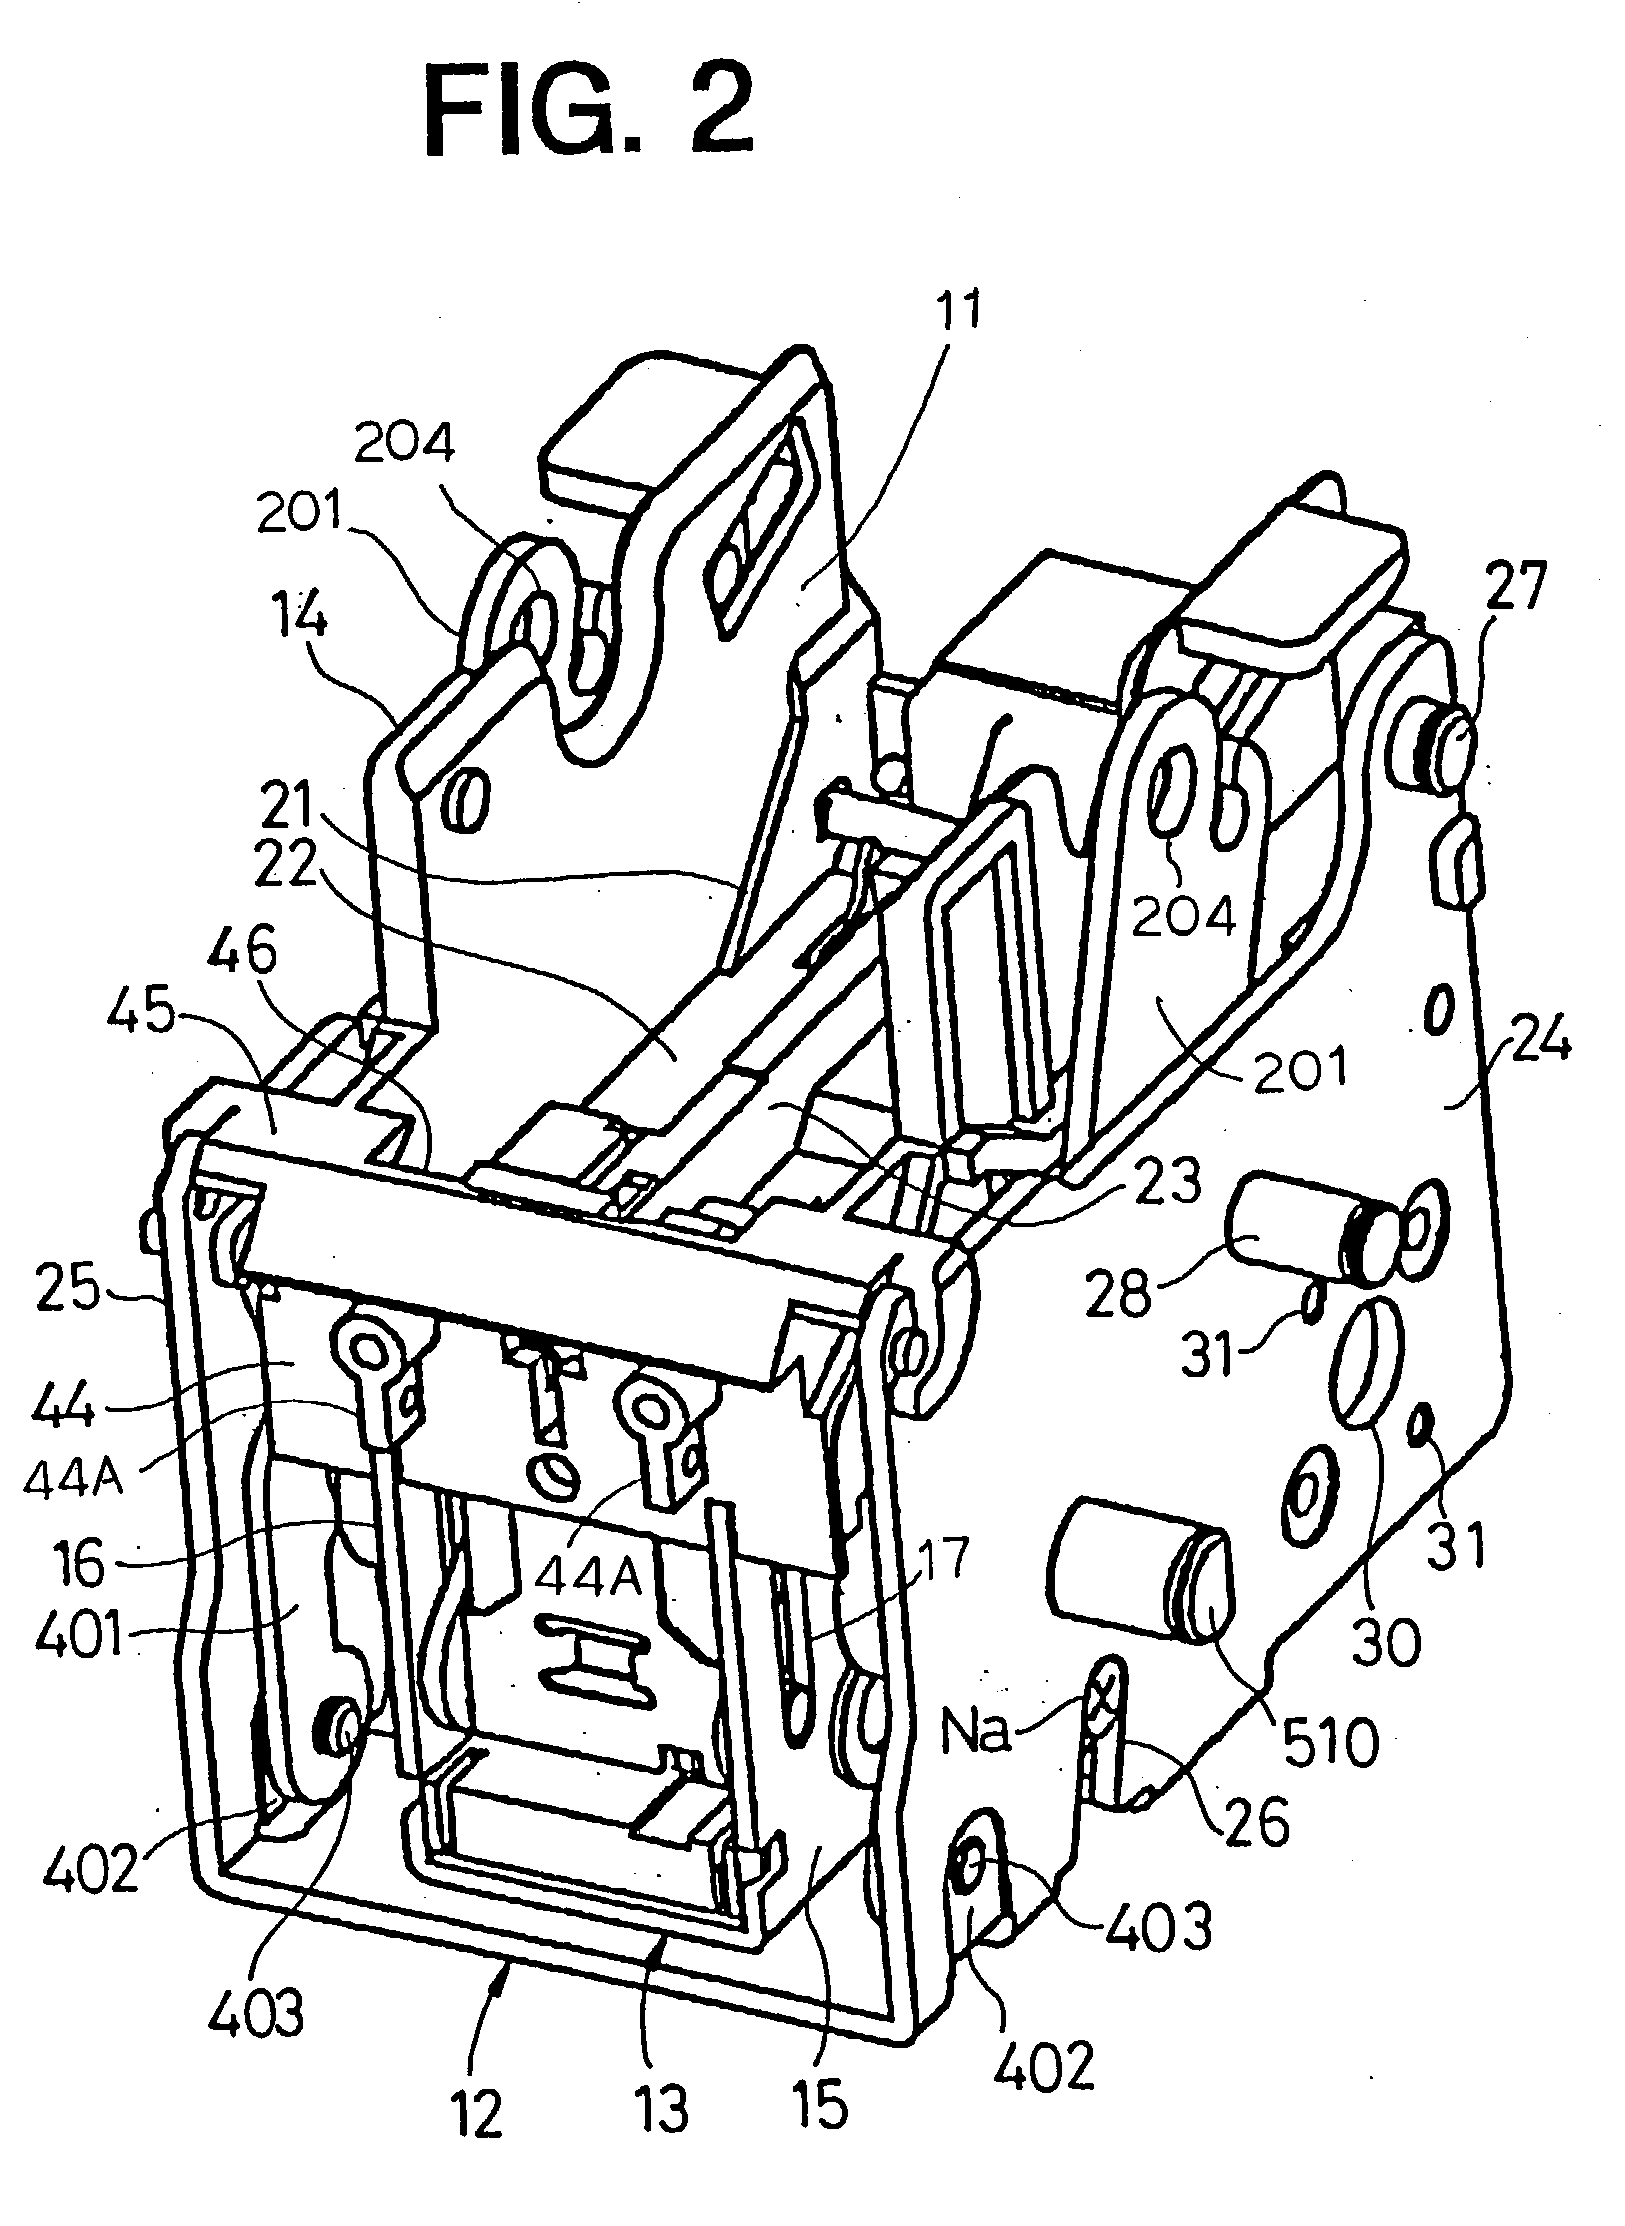 Motor-driven stapler